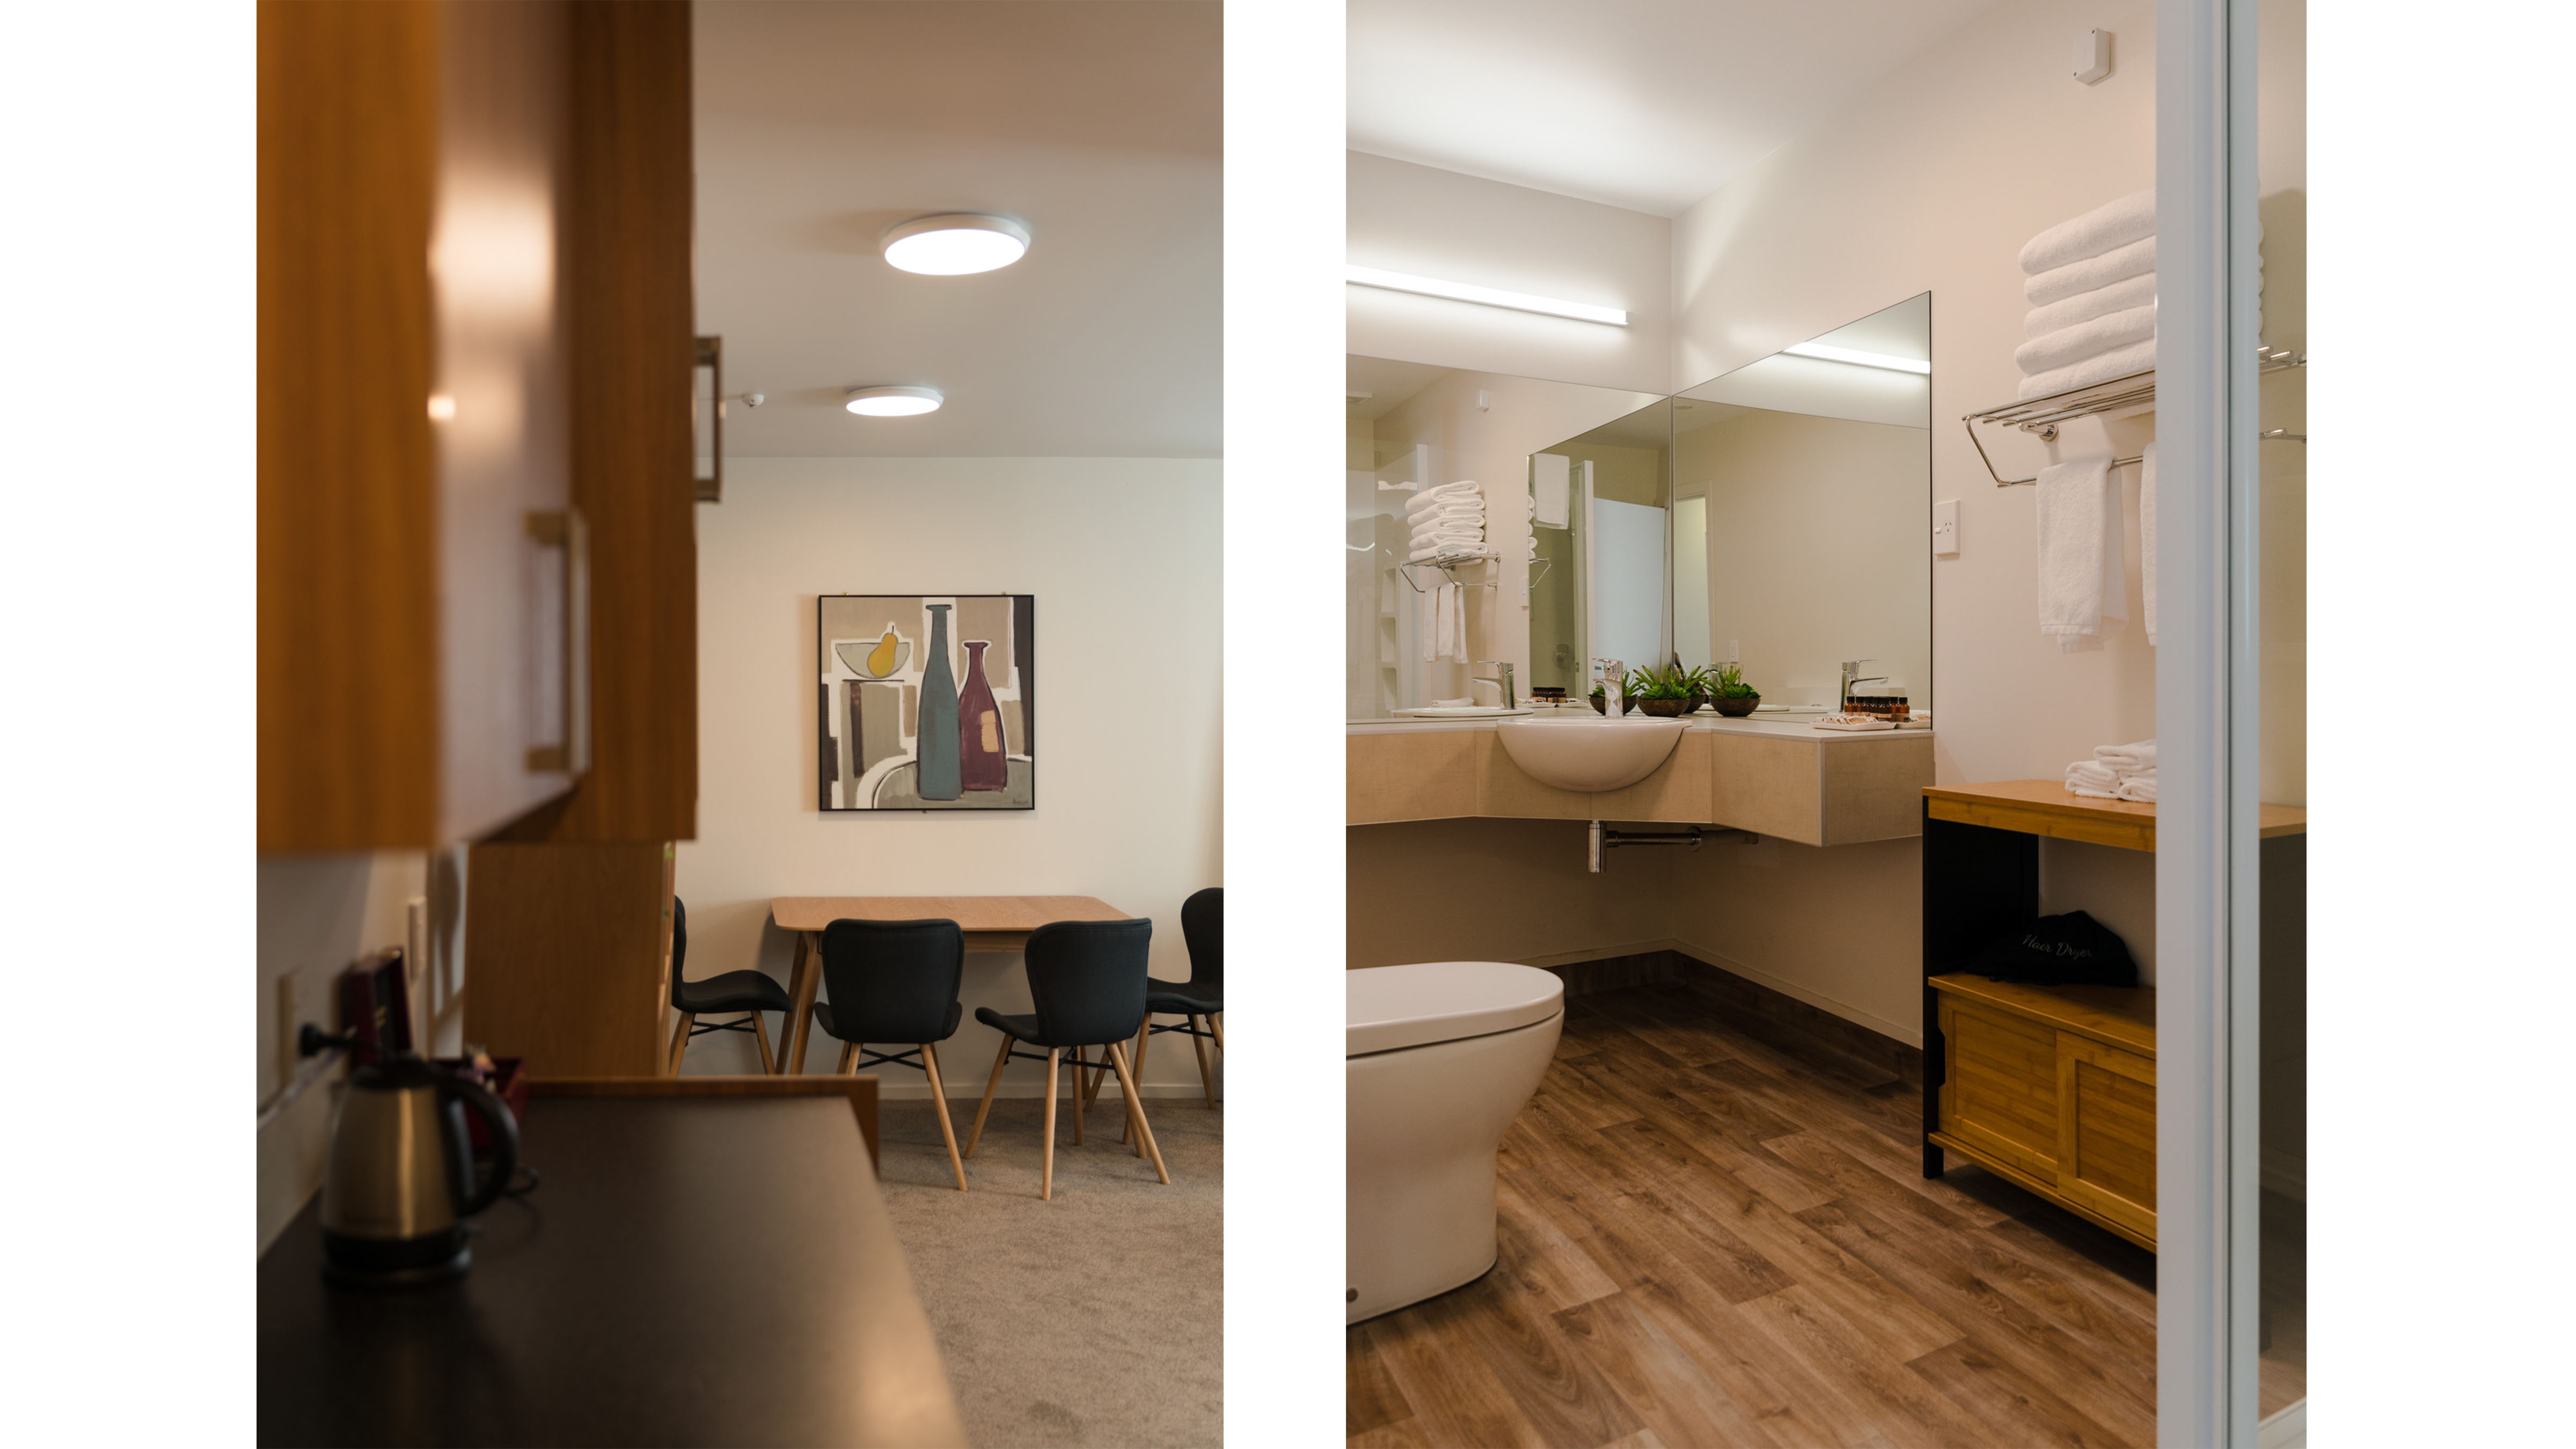 Dunedin design company complete modern interior design for hotel